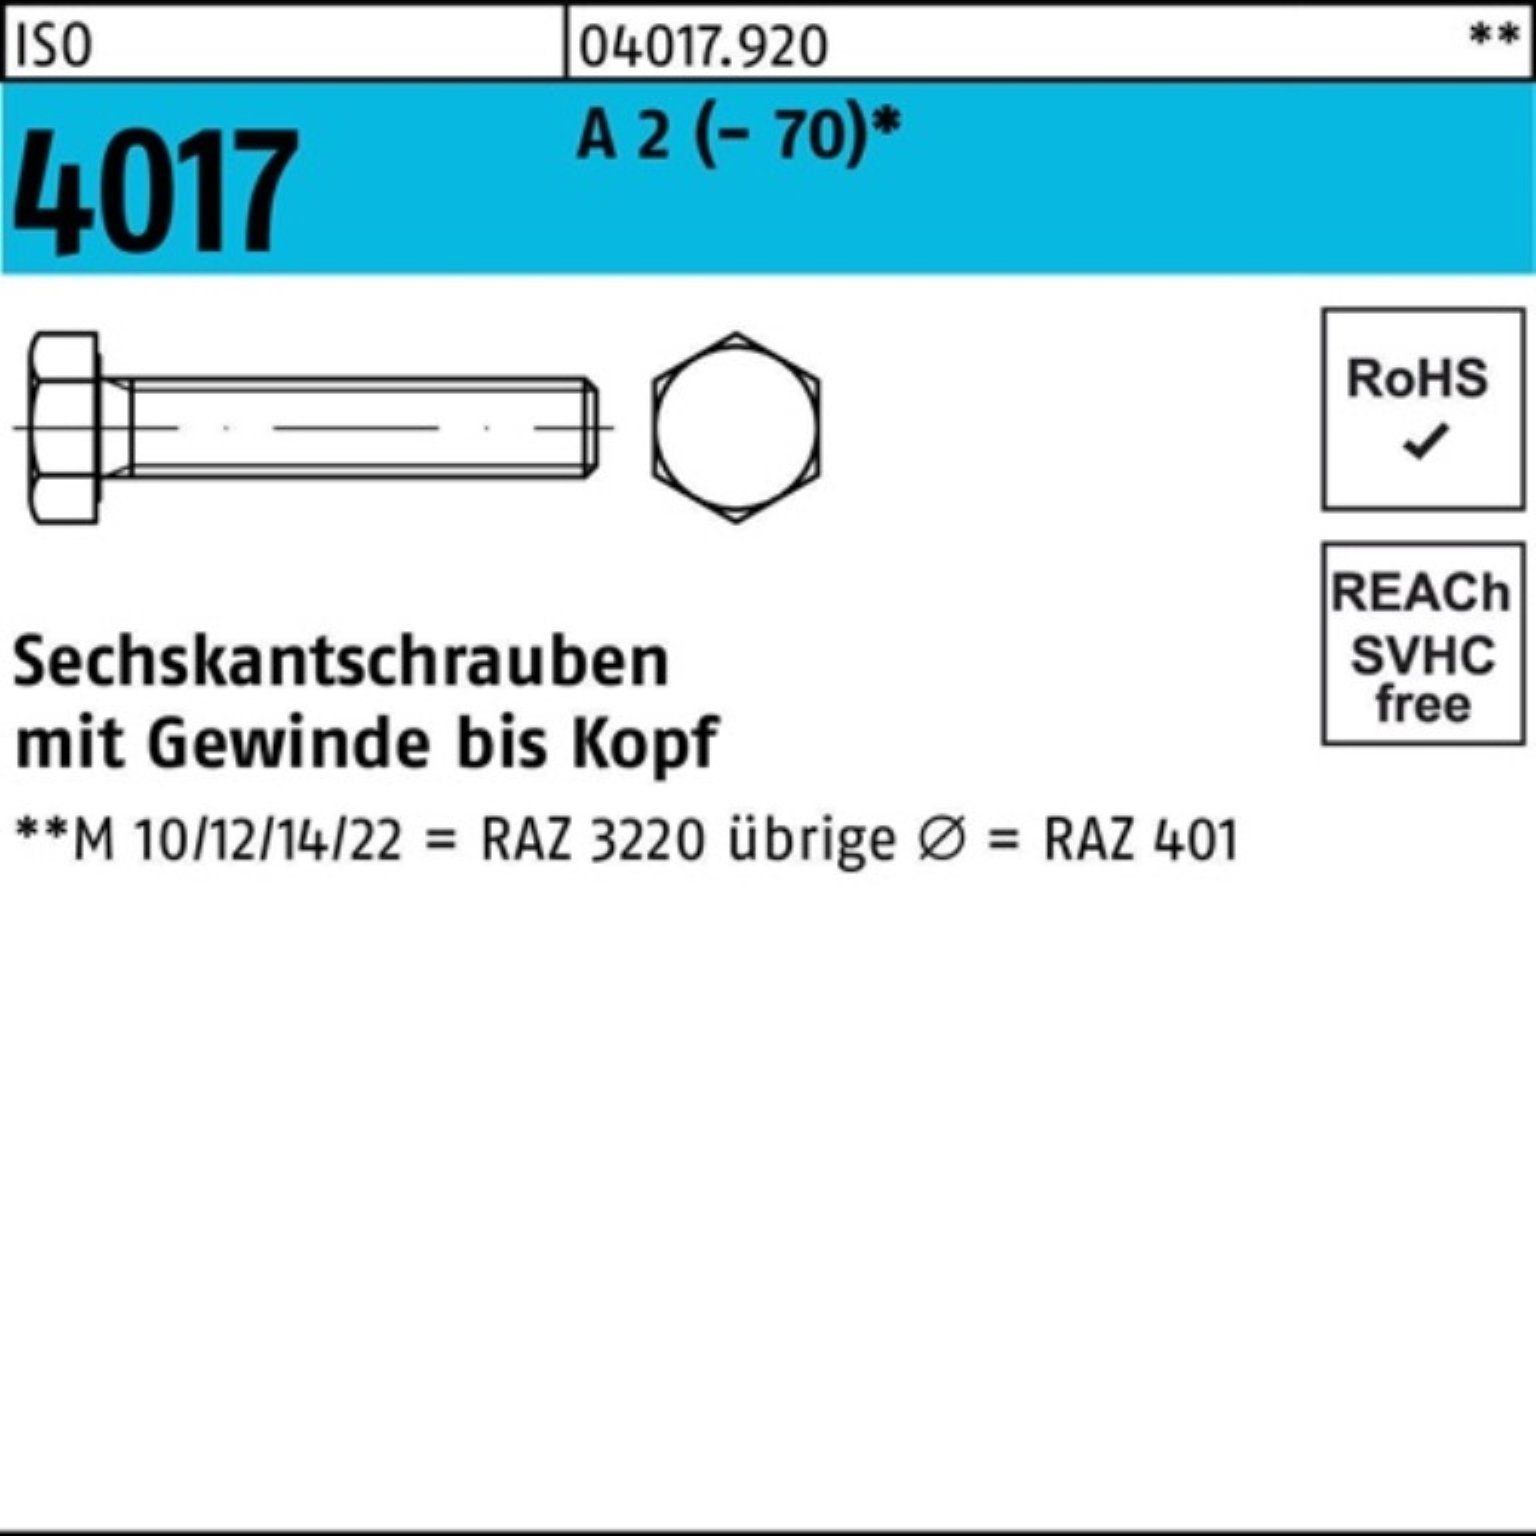 Bufab Sechskantschraube 100er Pack Sechskantschraube ISO 4017 VG M27x 50 A 2 (70) 1 Stück I